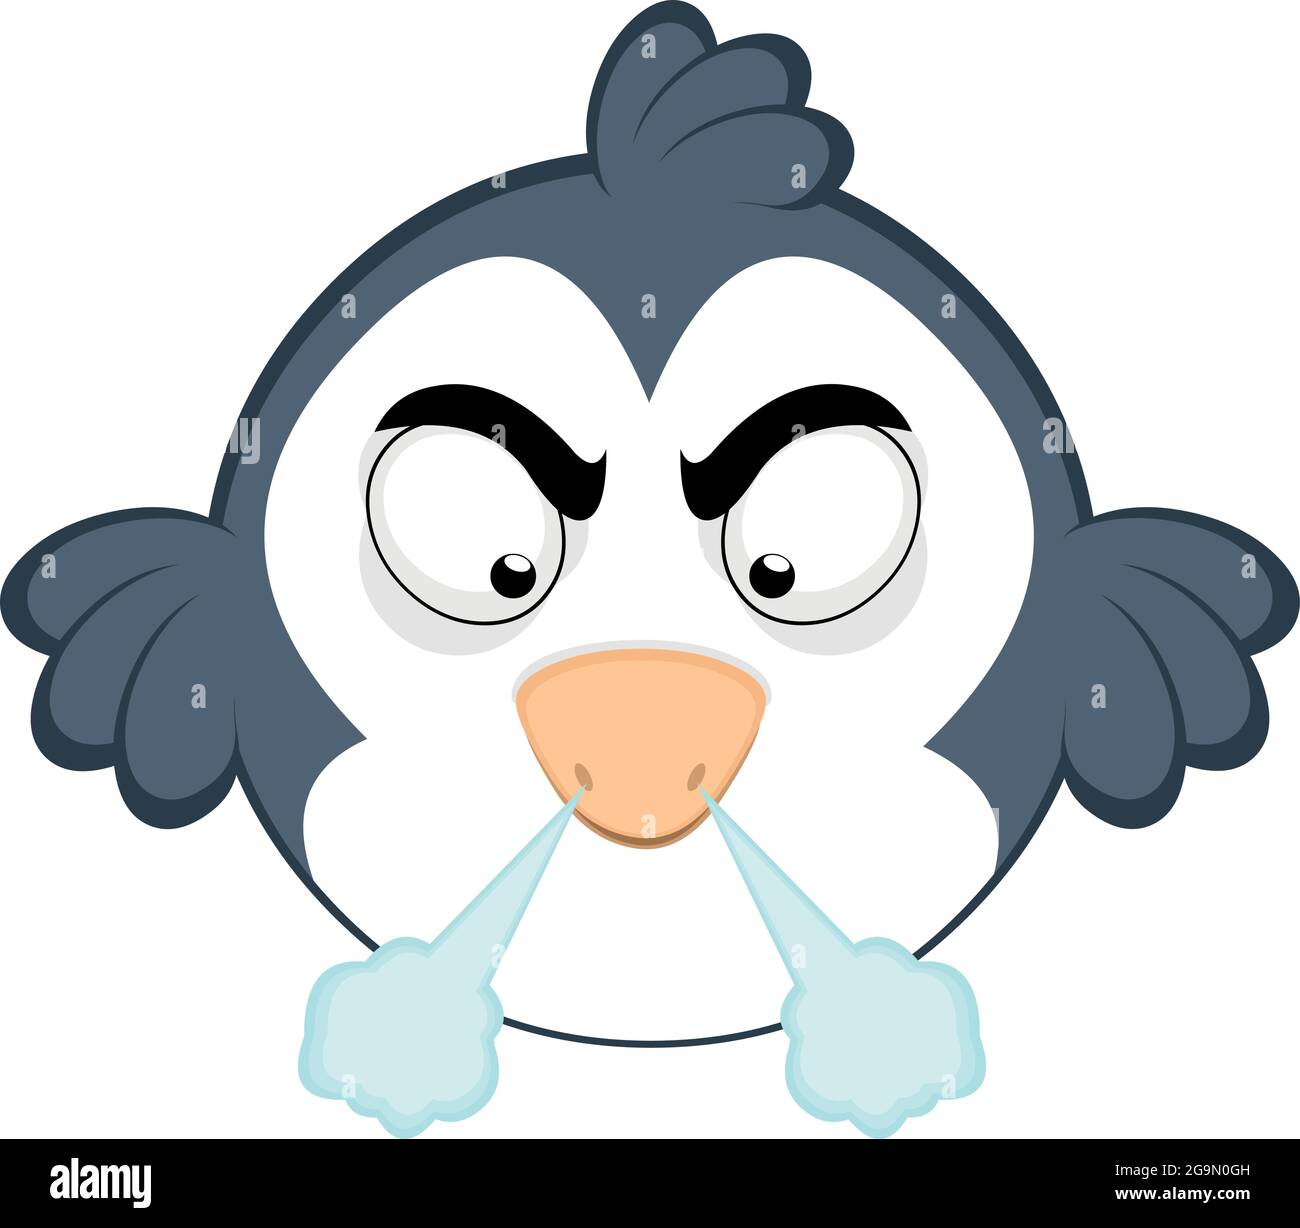 Vector emoticono ilustración de un pájaro de dibujos animados con una expresión enojada y fuming Ilustración del Vector